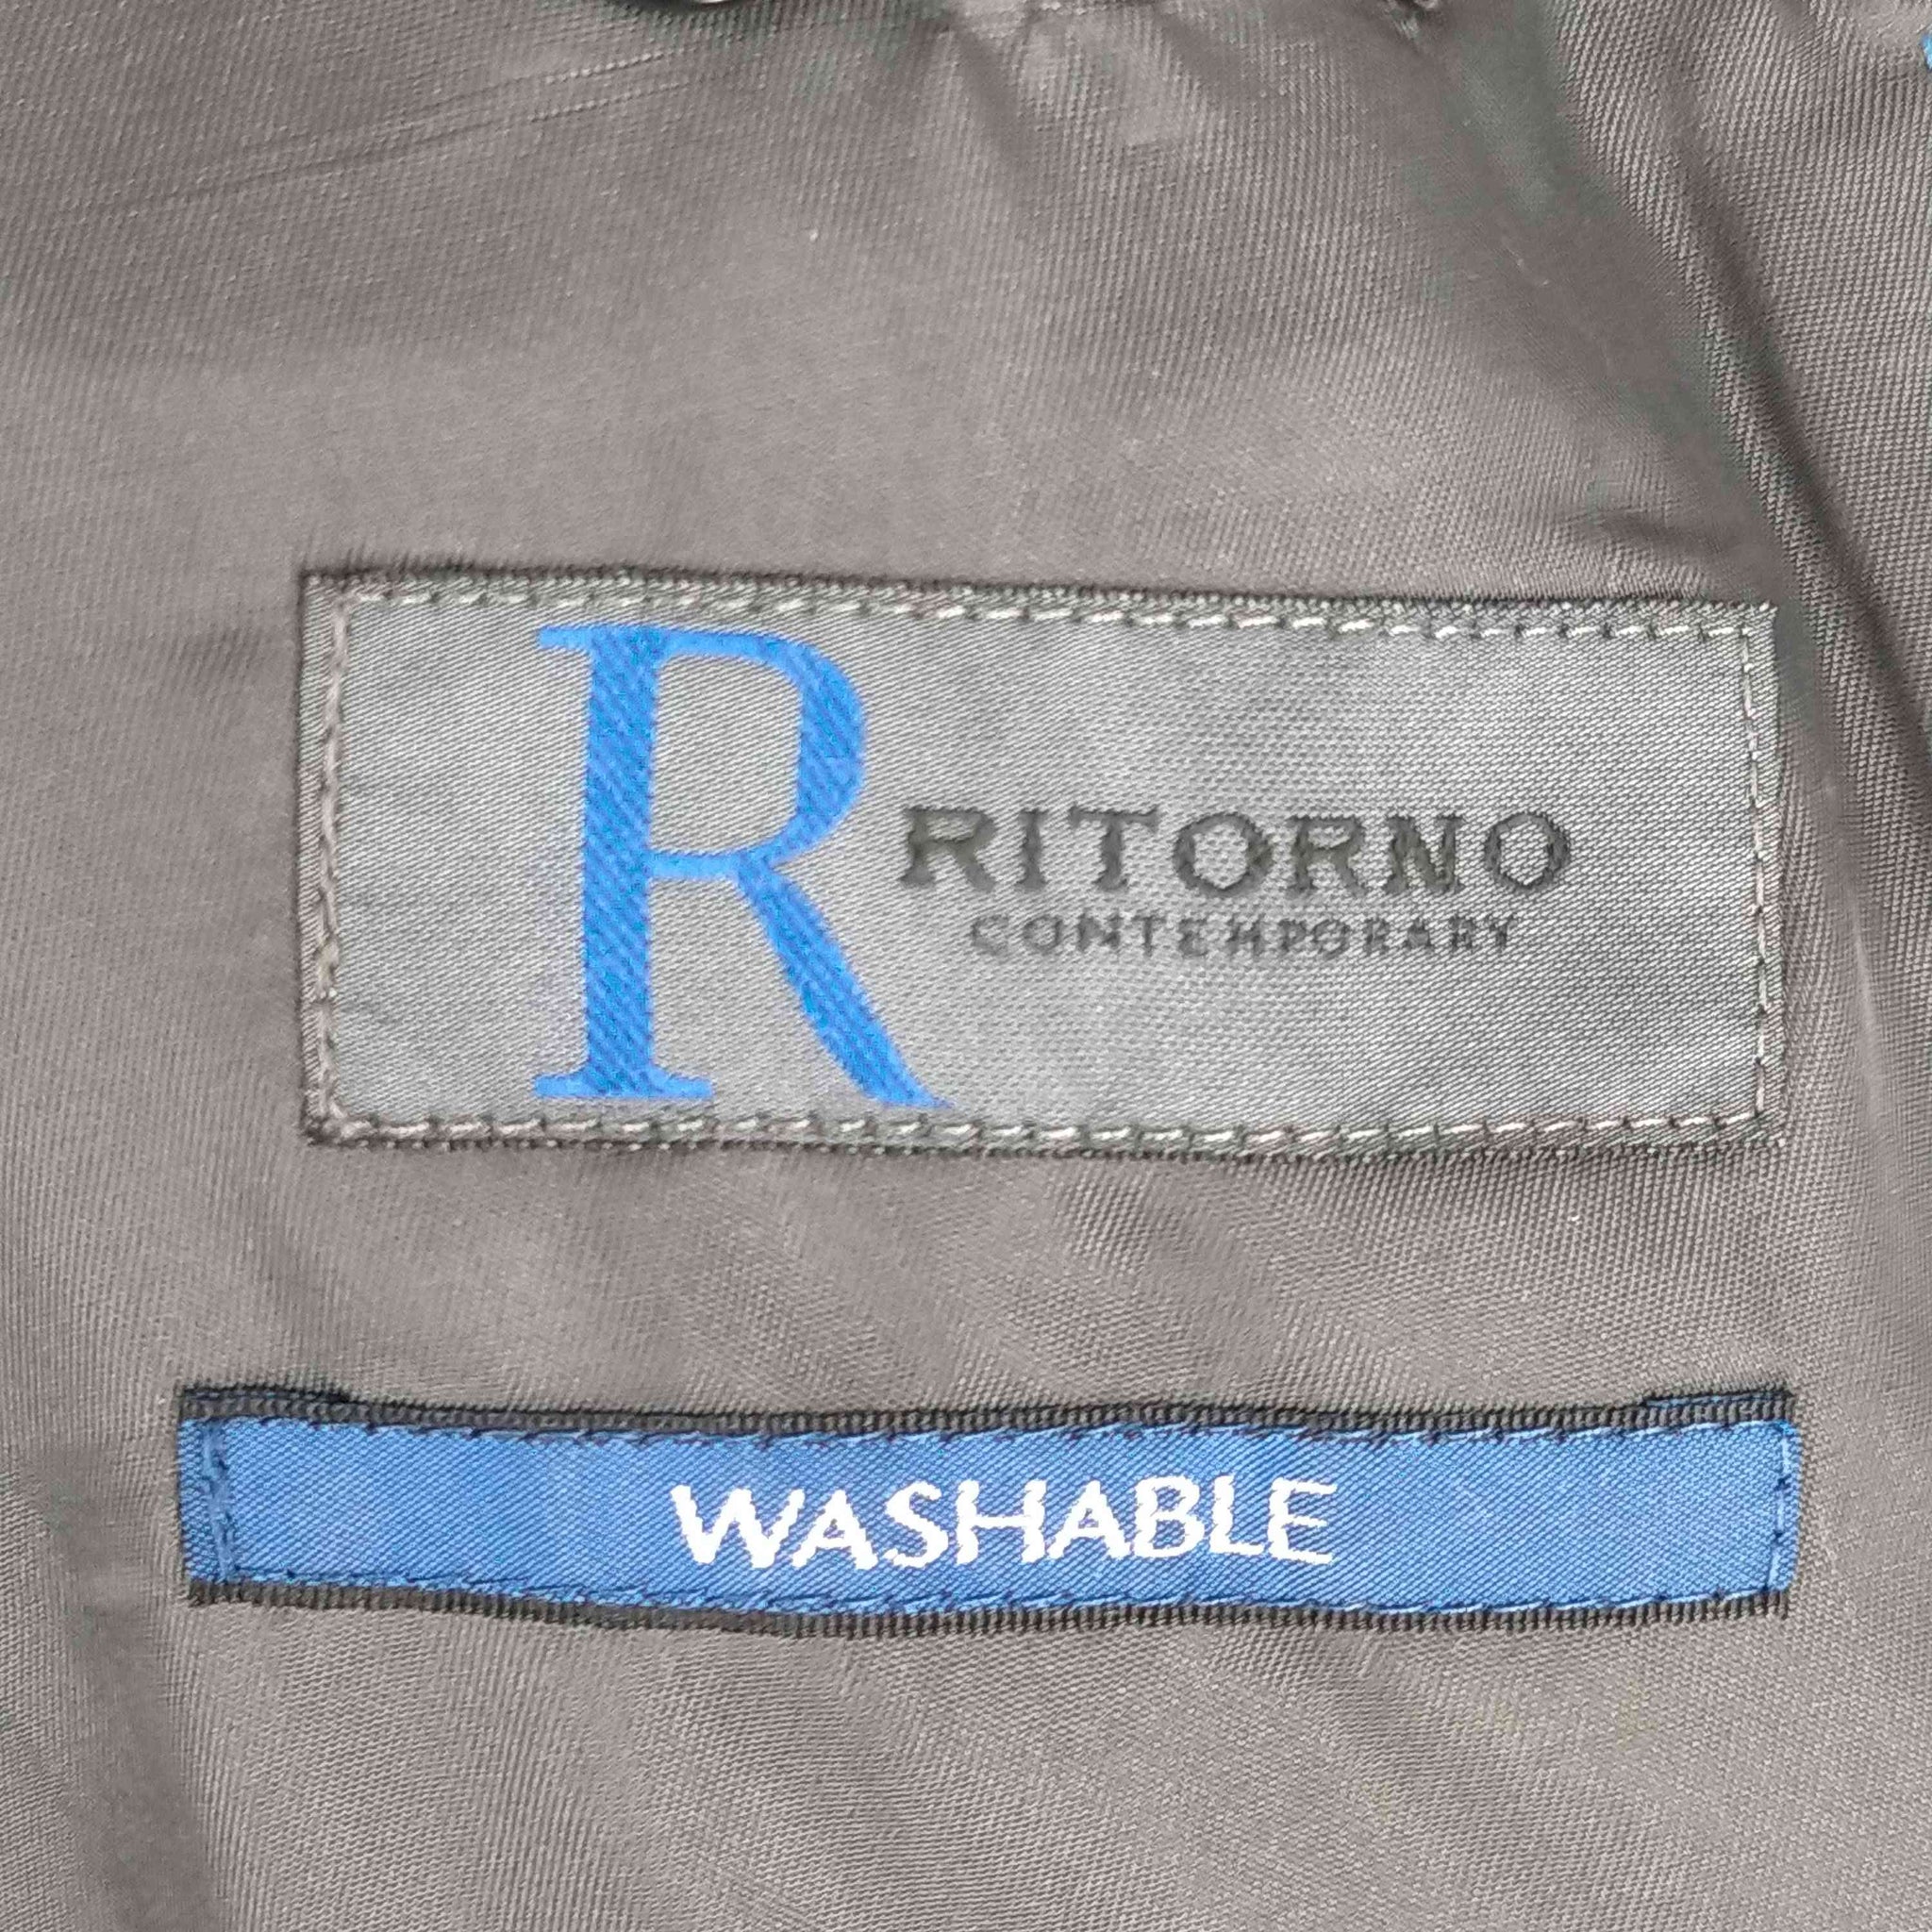 RITORNO(リトルノ)ストライプスーツセットアップ